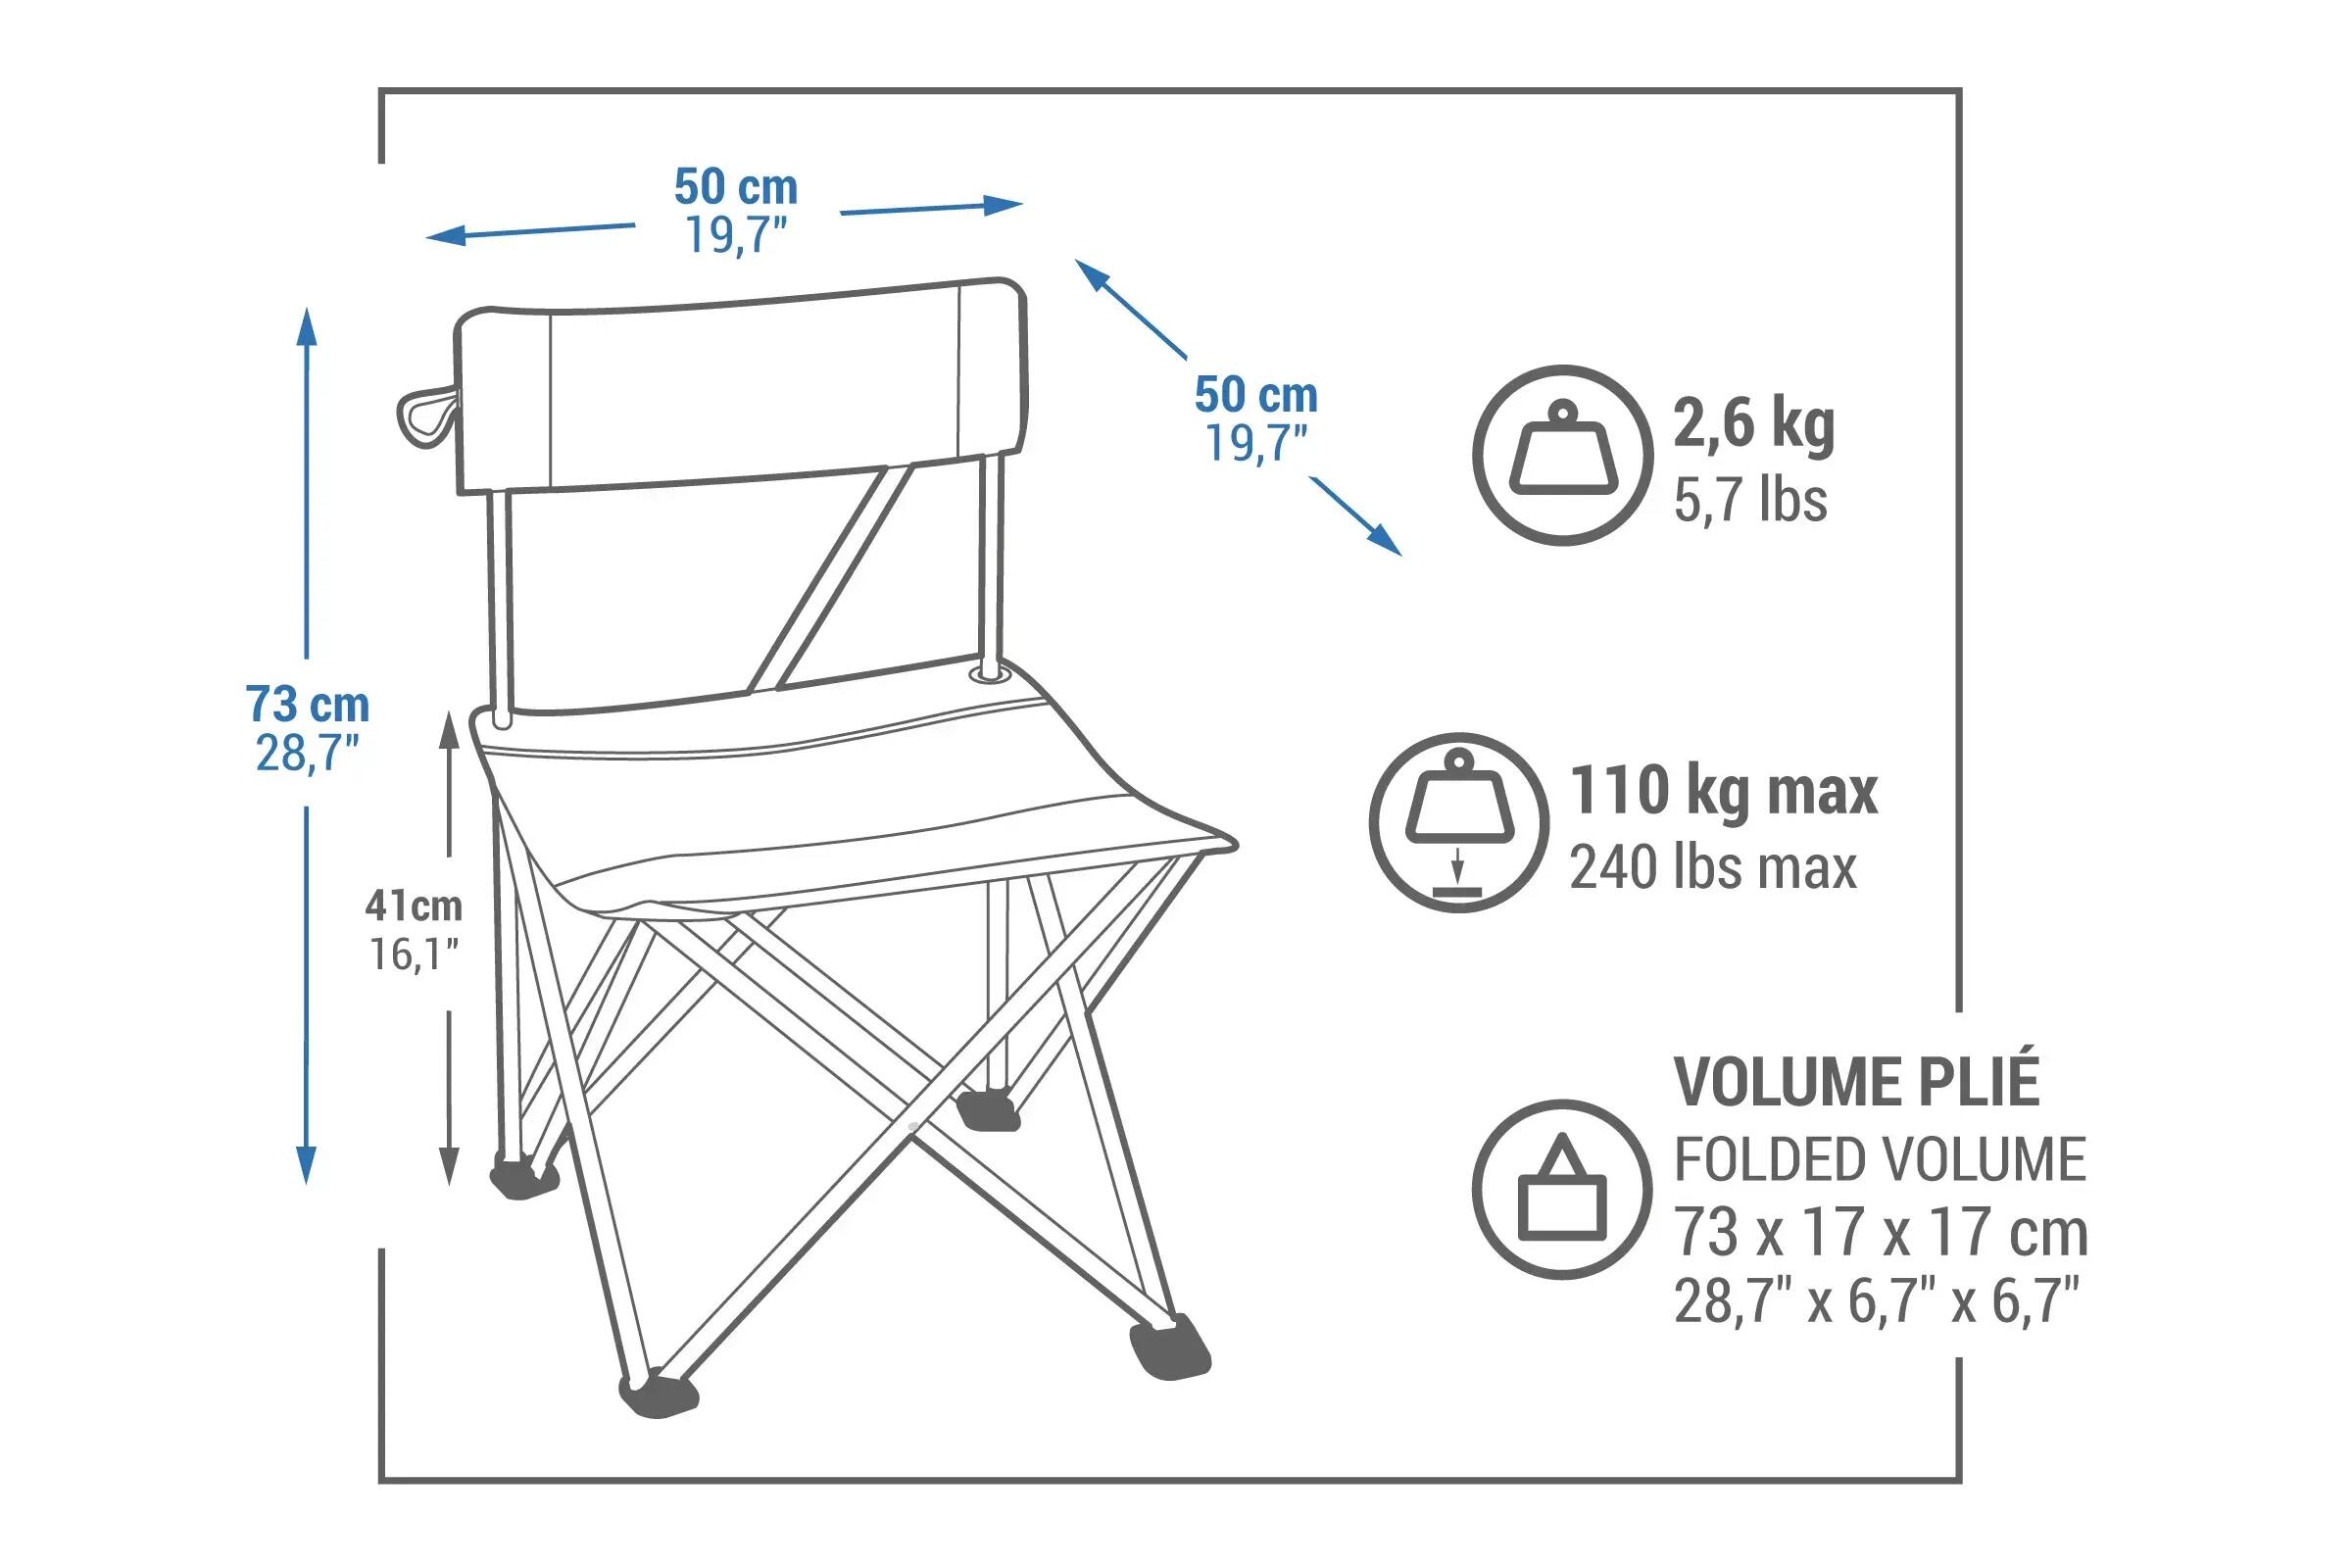 Quel est le poids maximal que la chaise de camping peut supporter ?